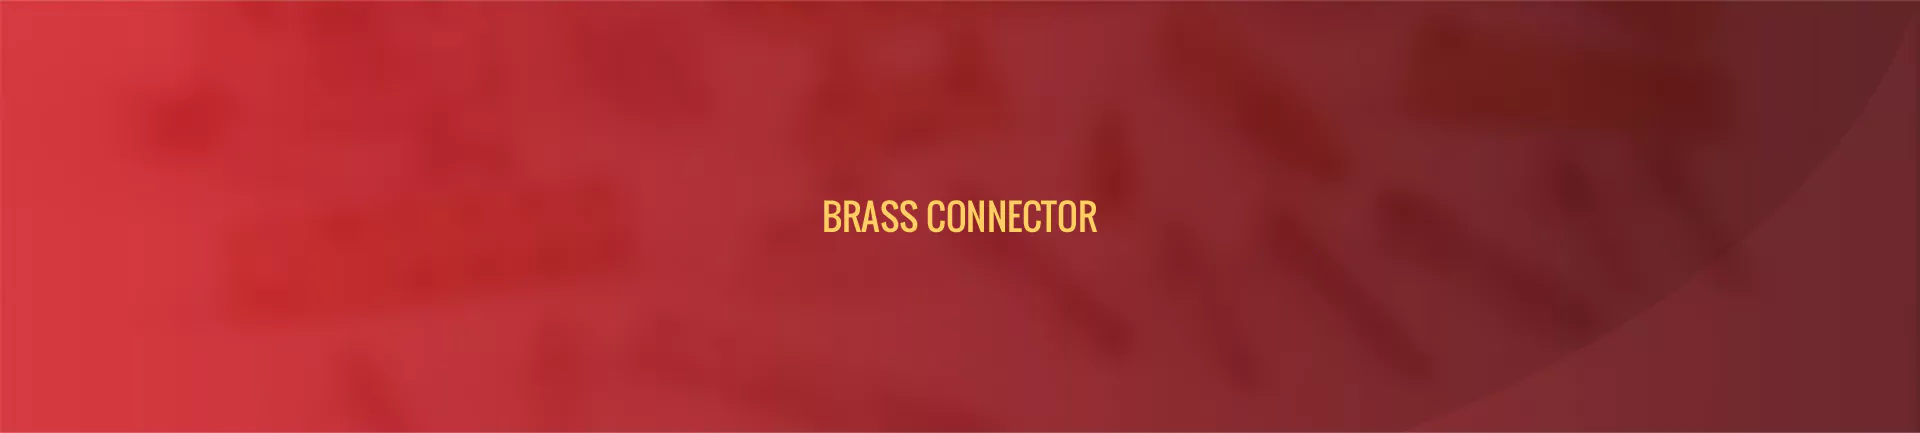 brass_connector-banner